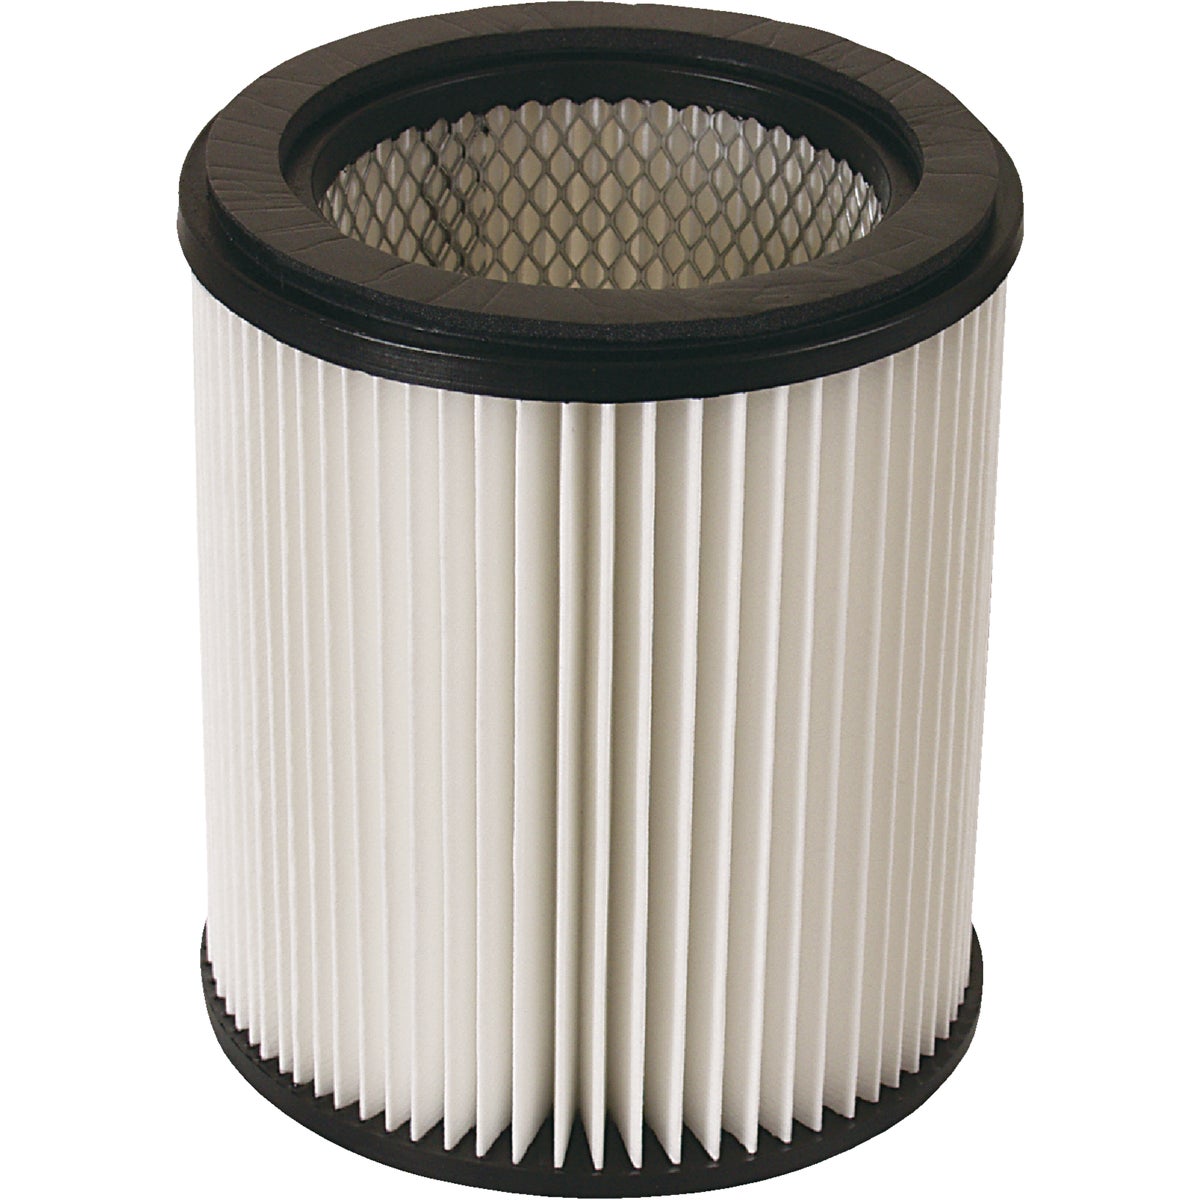 Item 992917, Cartridge filter for MI-T-M Industrial wet/dry vacuum.